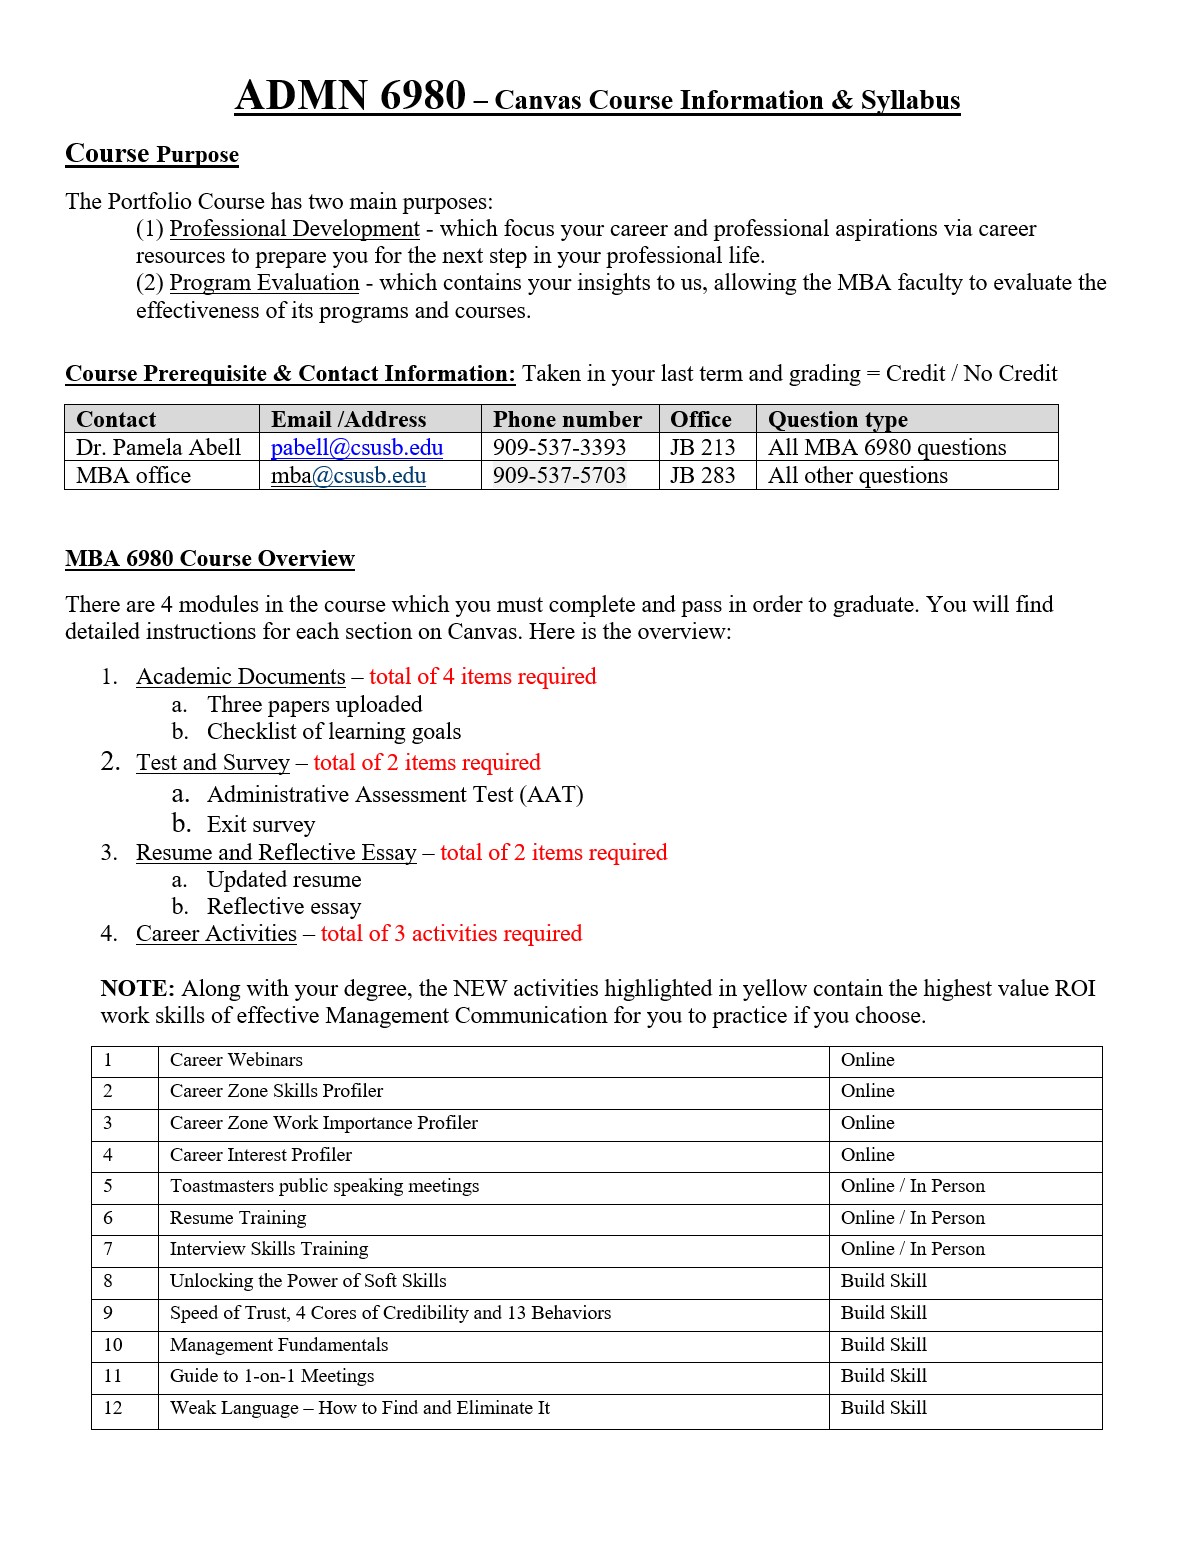 Course Information & Syllabus for ADMN 6980